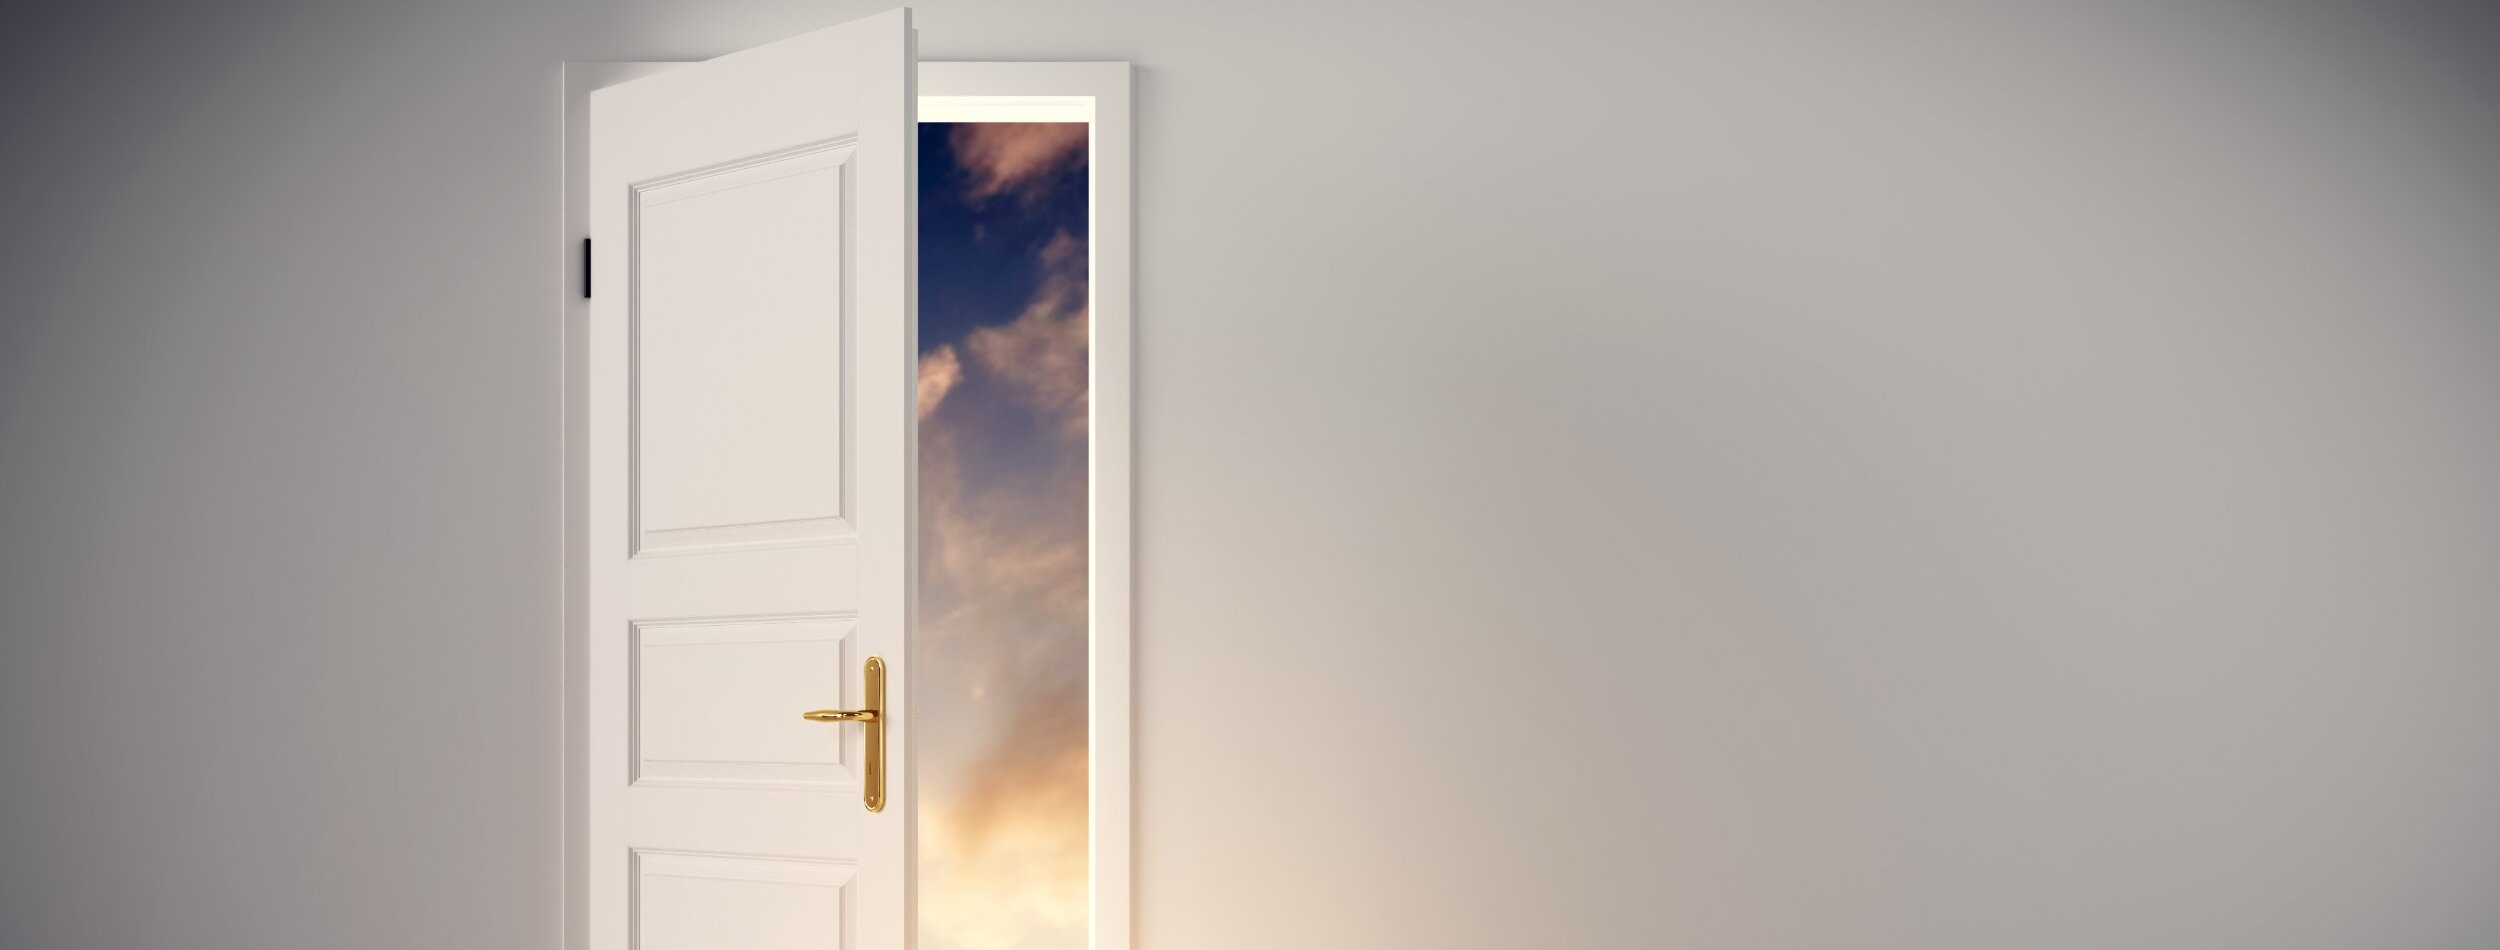 A door opening showing a sky.